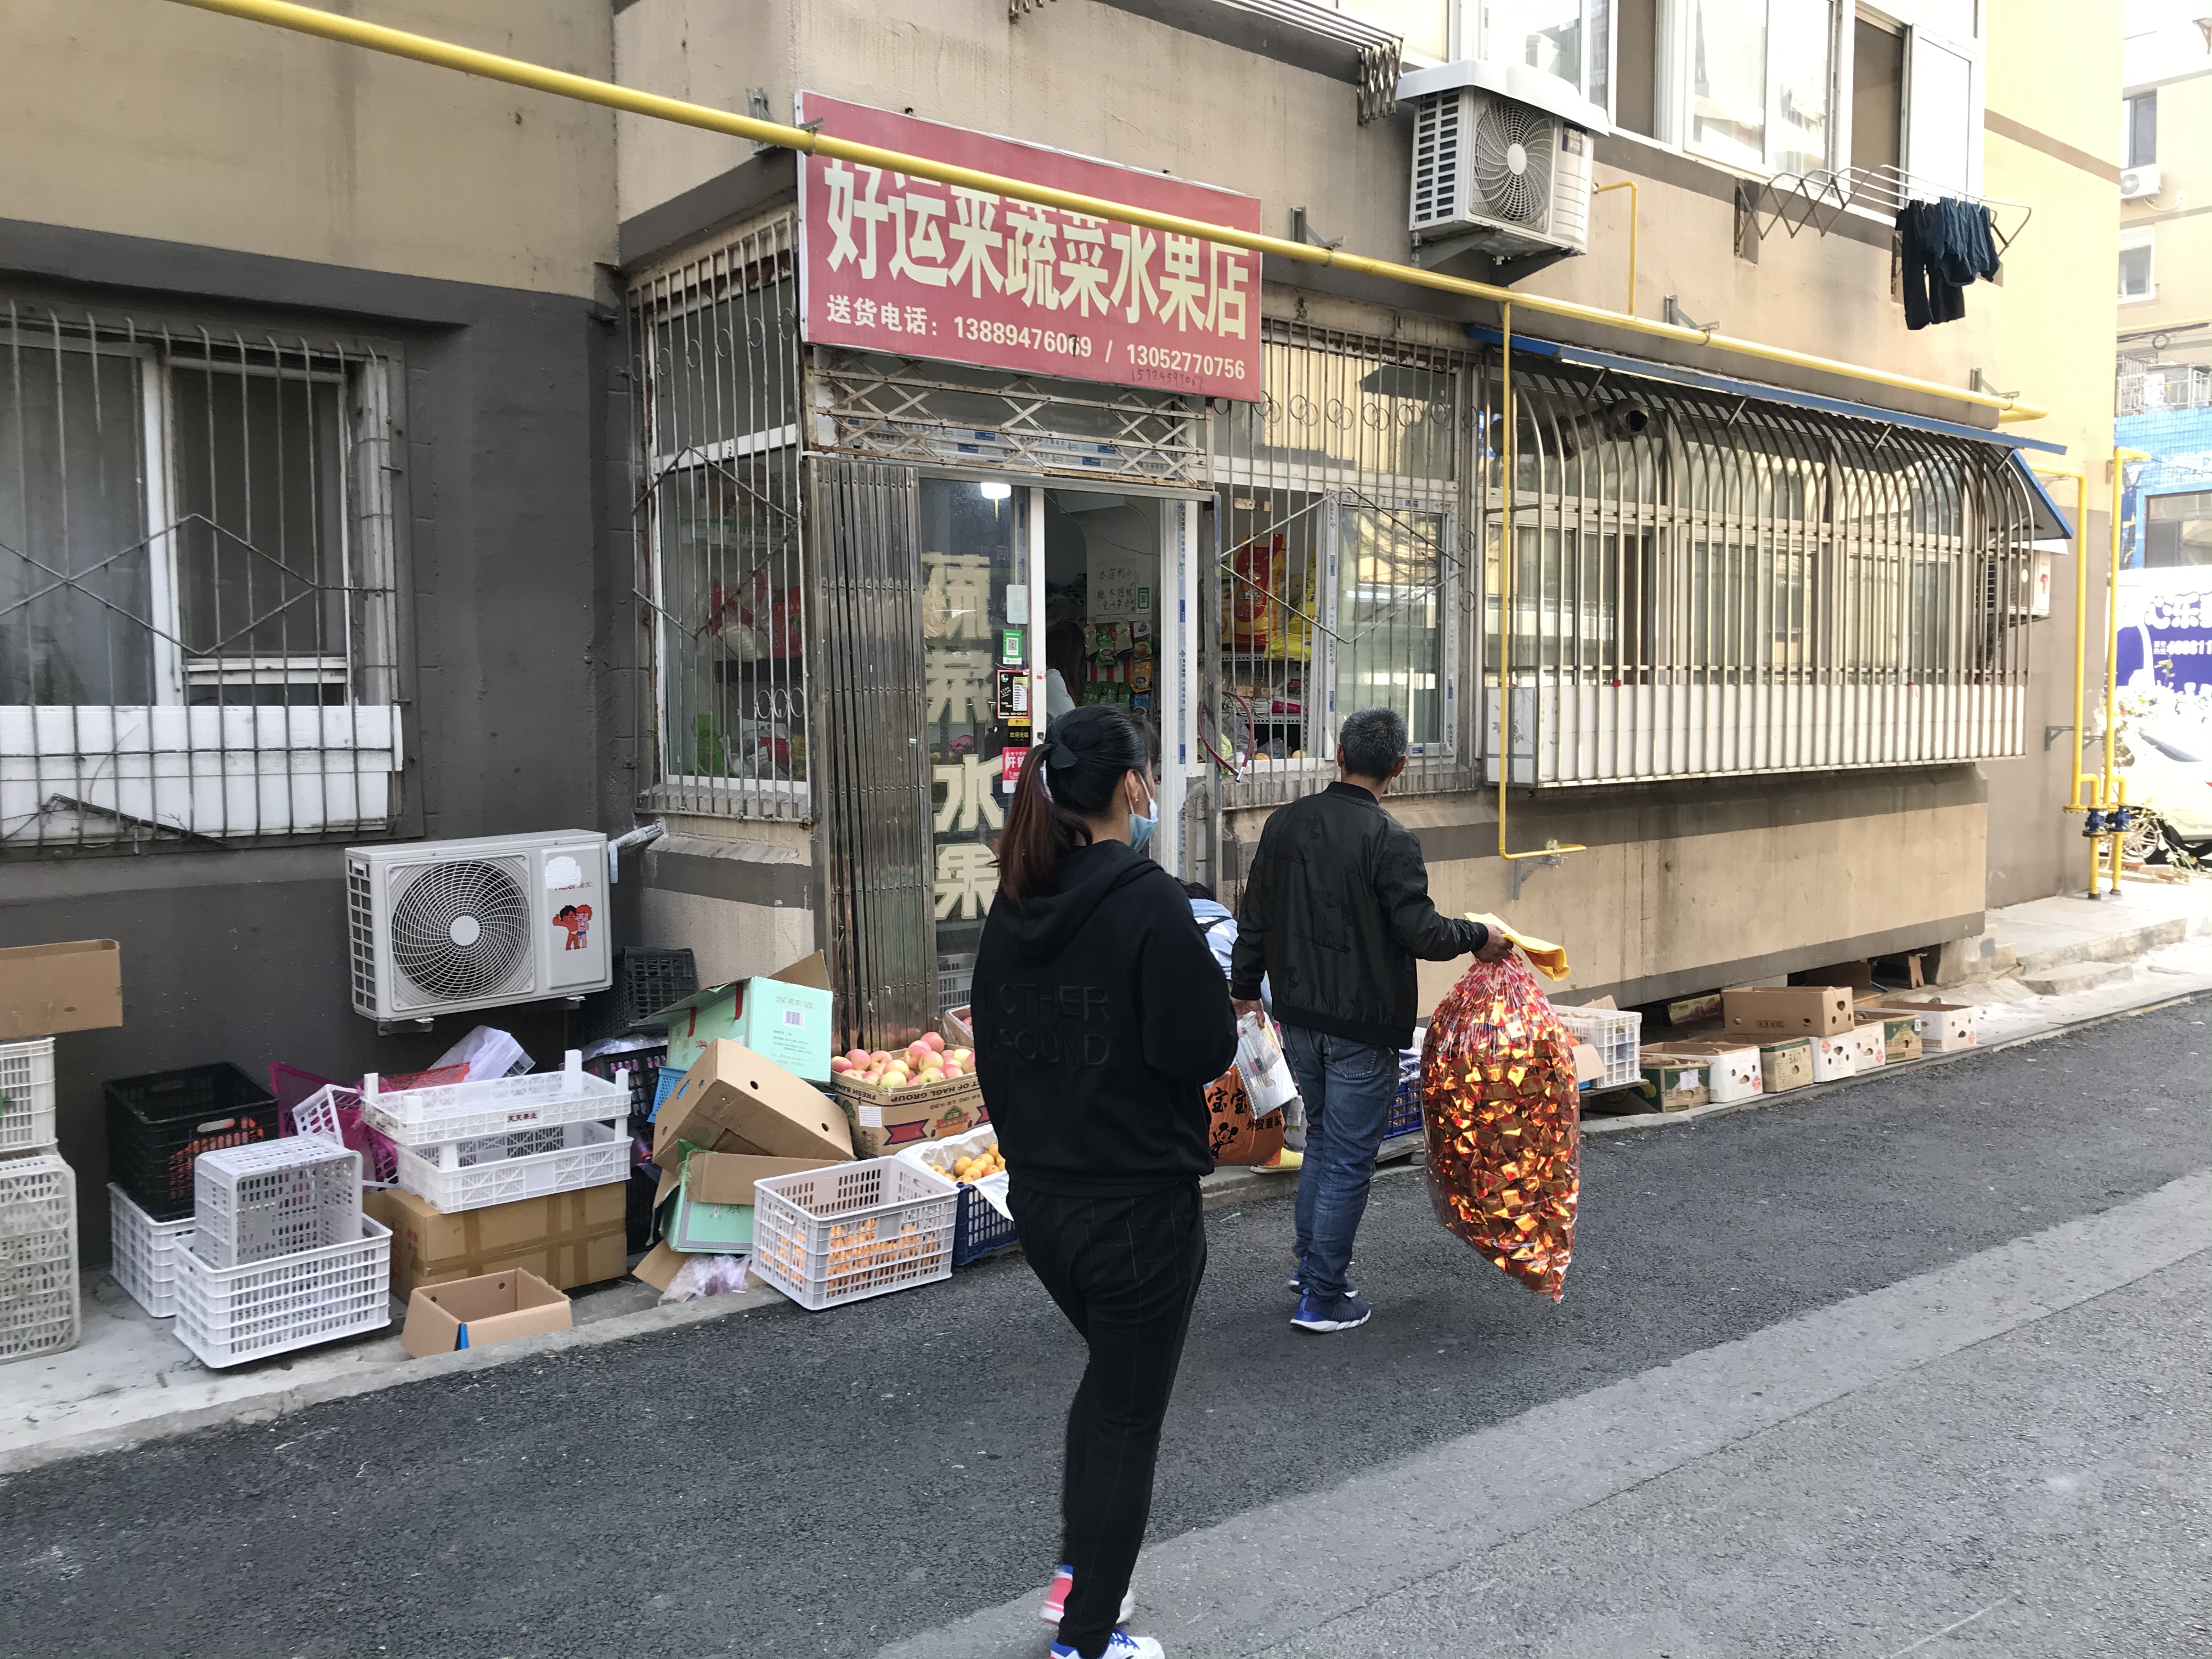 贺美玲及家人路过自家经营的“好运来蔬菜水果店”，案发一个月后，水果店转给了弟弟经营。